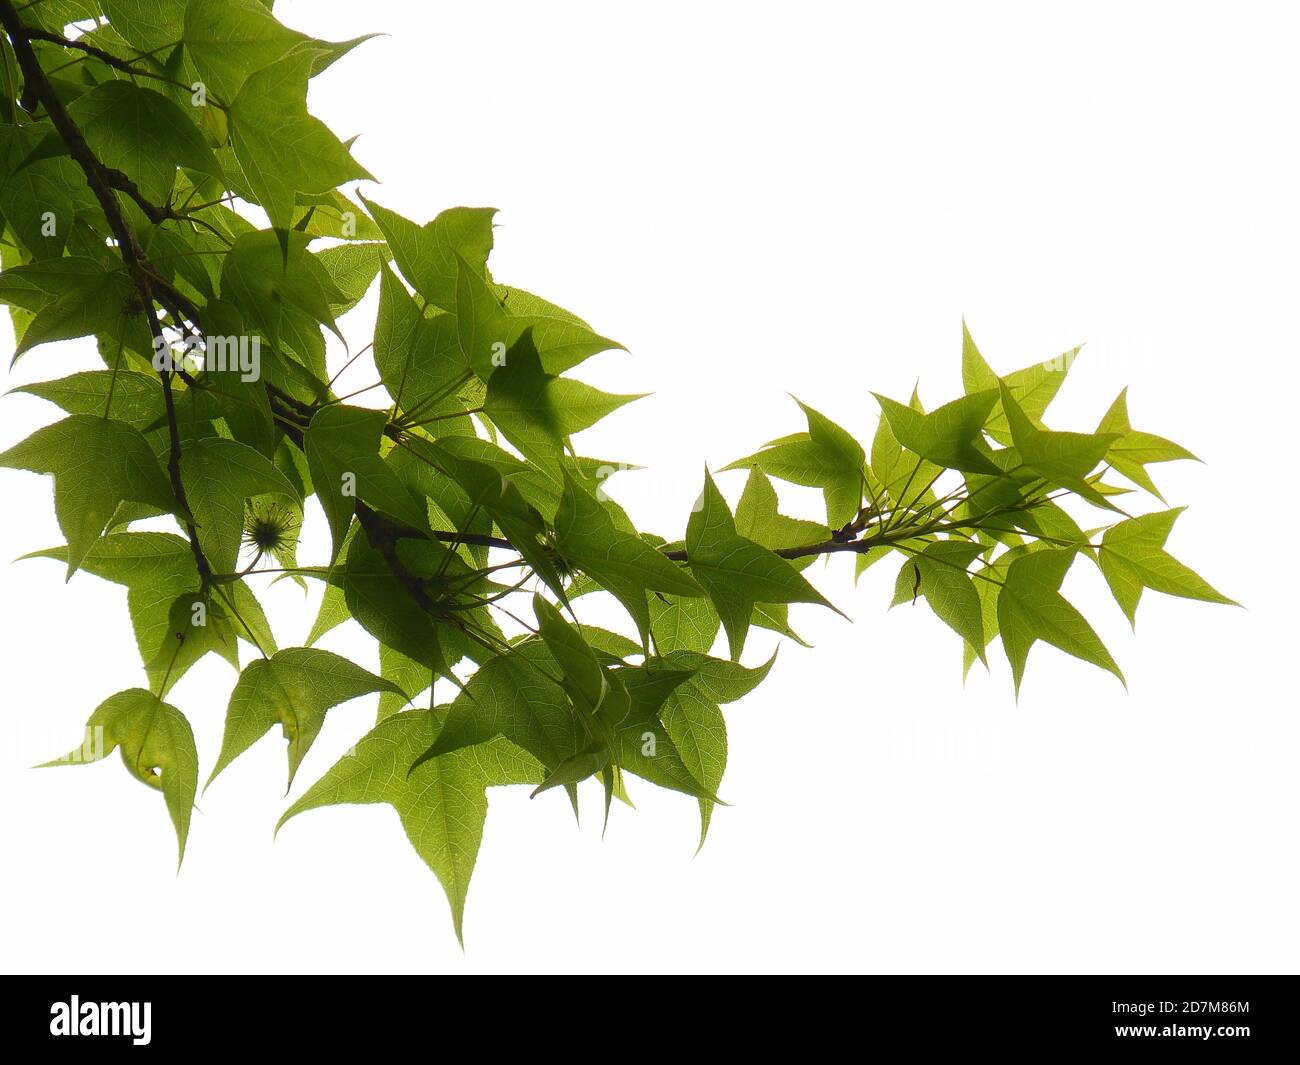 Closeup shot of fresh foliage of Chinese sweet gum plant on white background Stock Photo